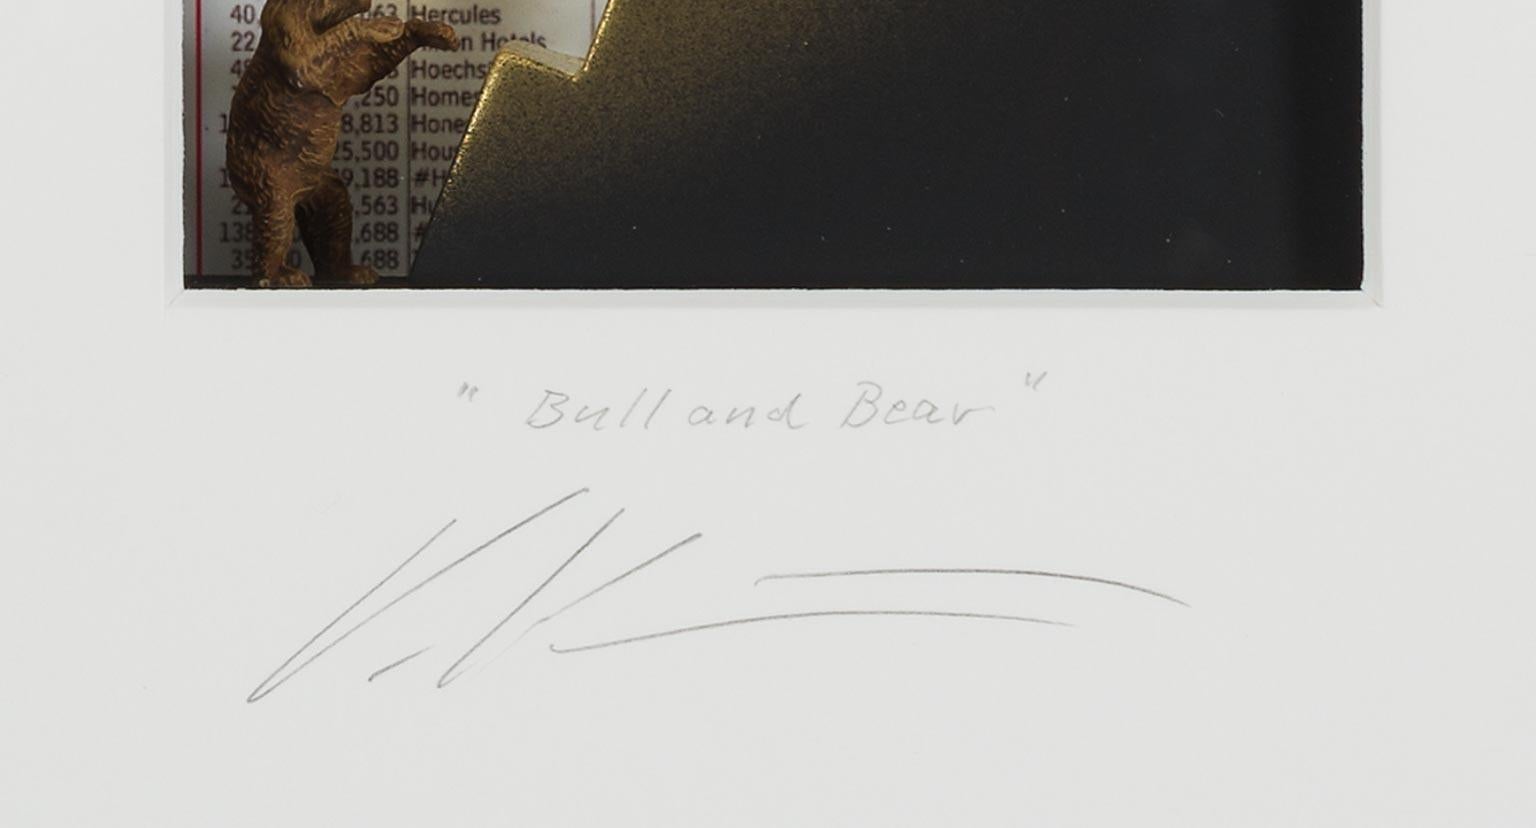 Bull&Bear - contemporary art in boxes artwork of the stock market byVolker Kuhn  2